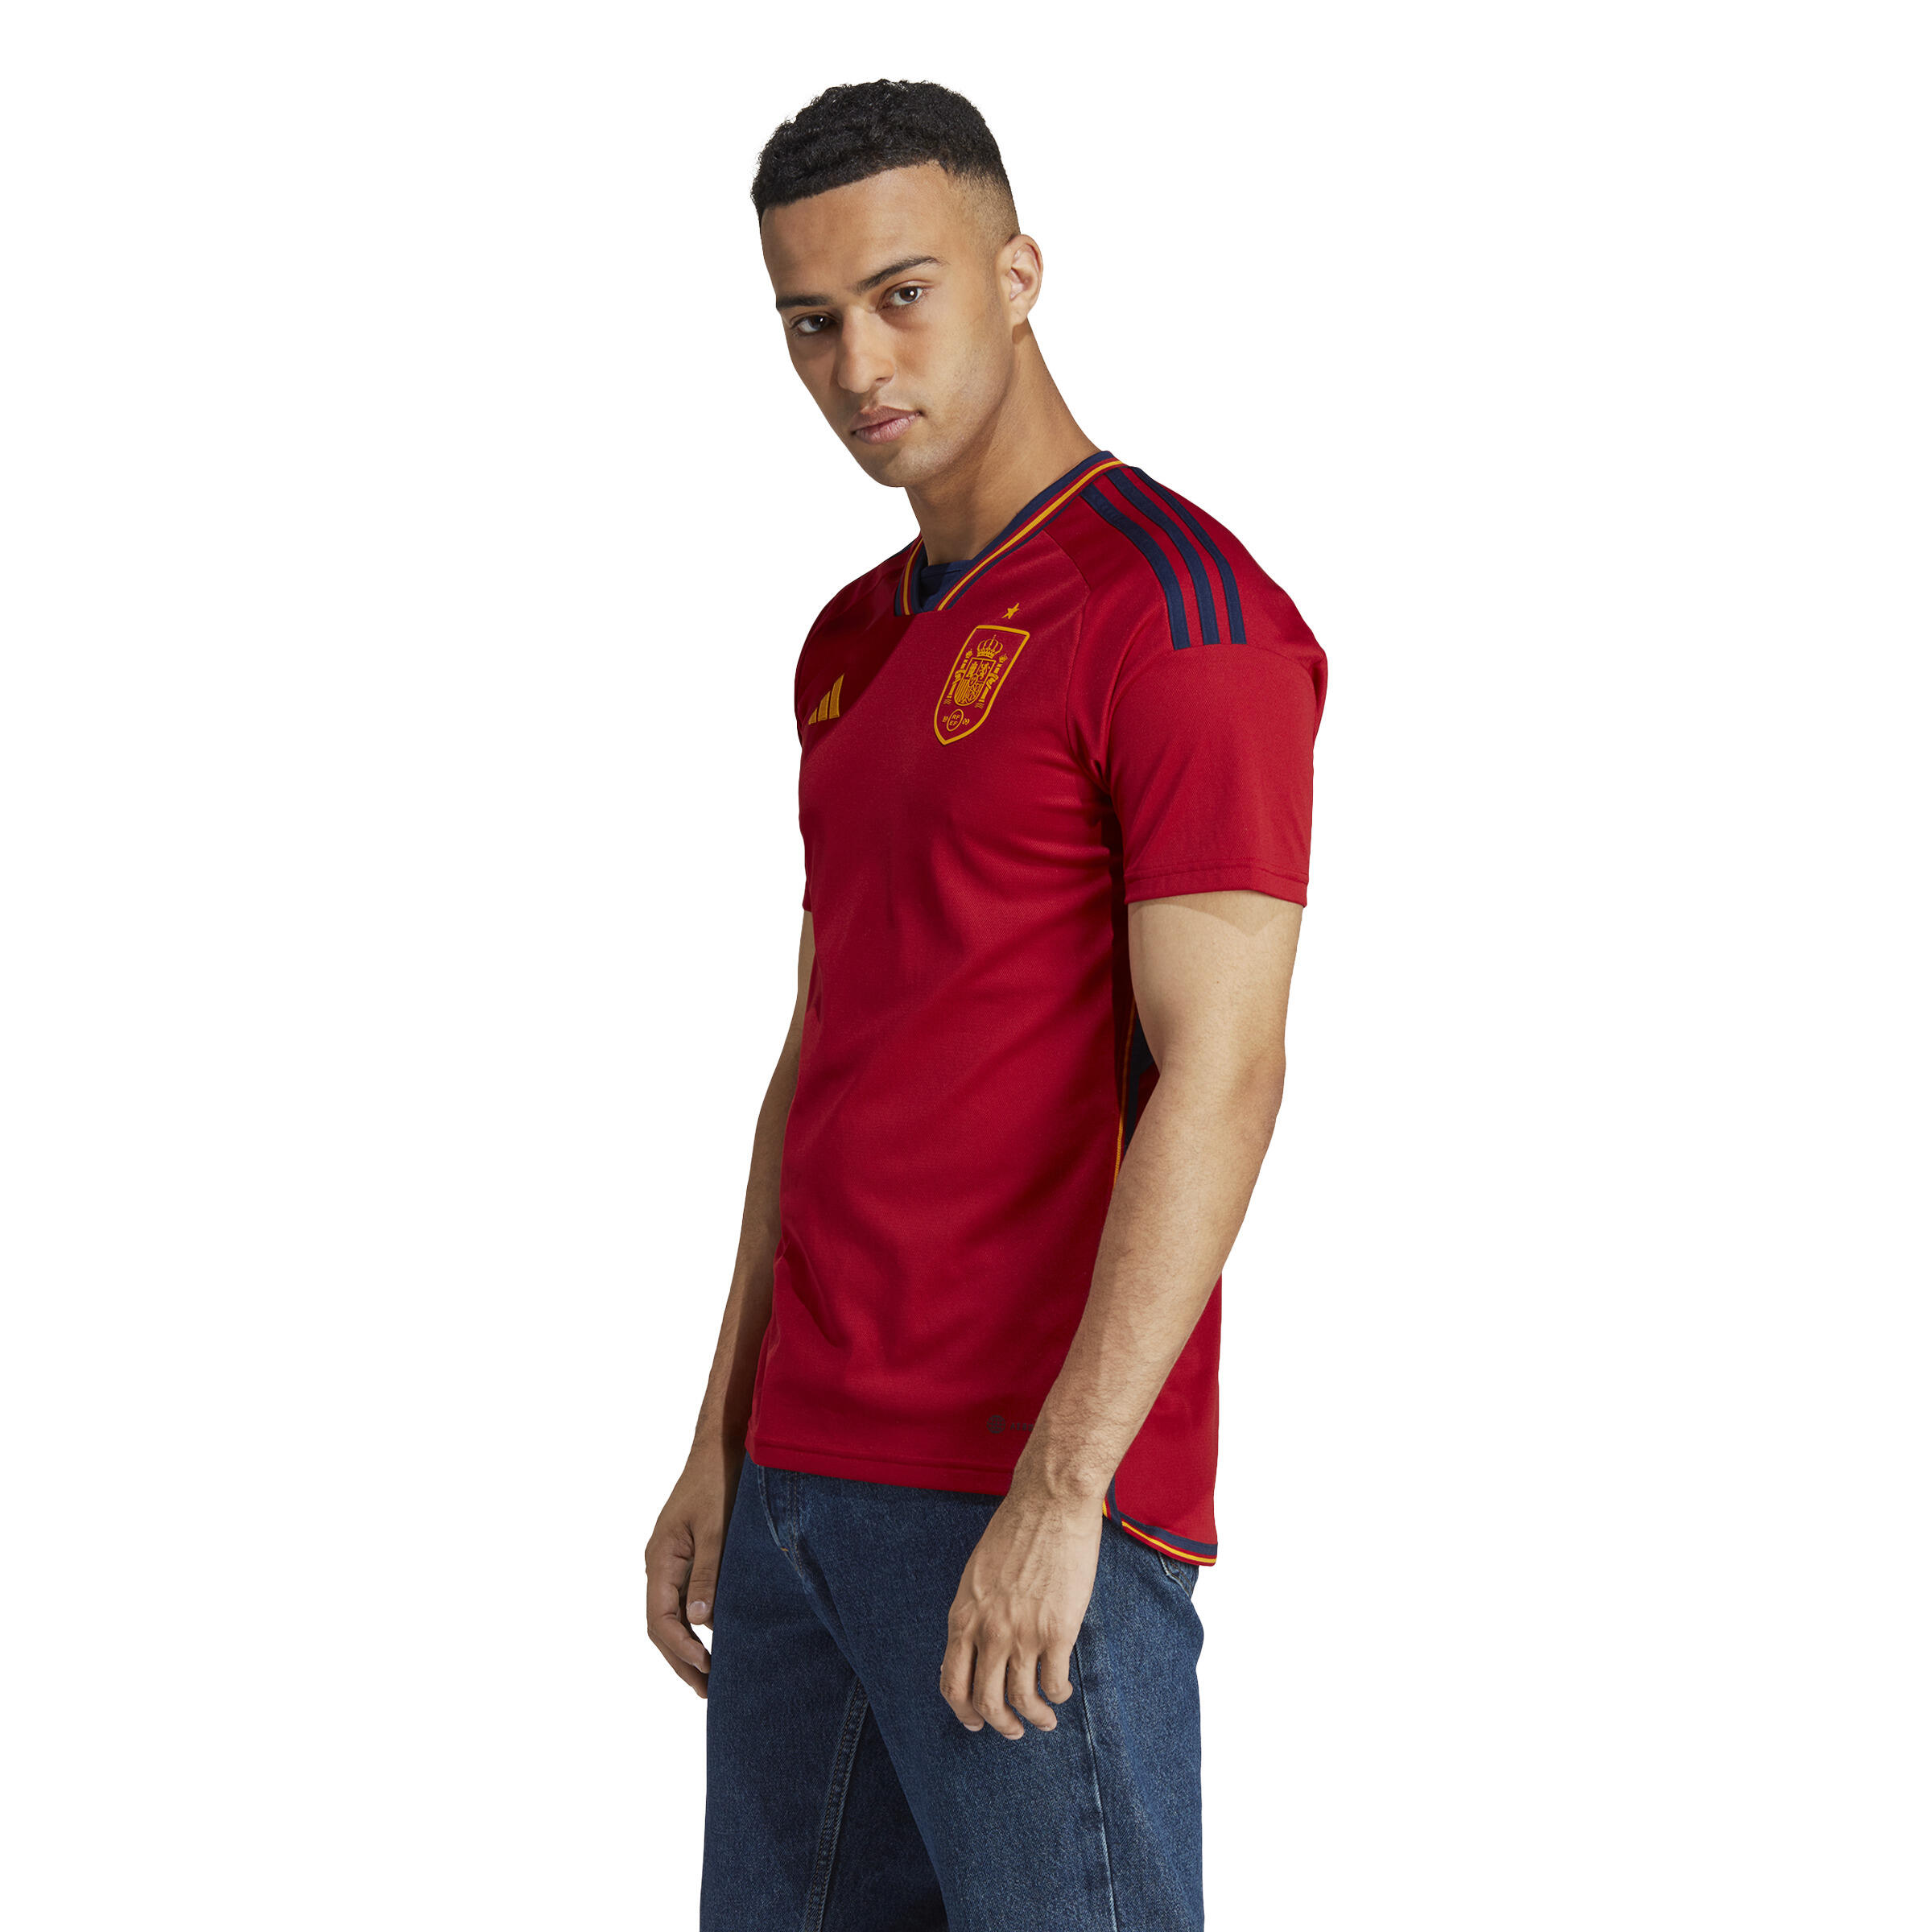 Primera Camiseta Espana 2022